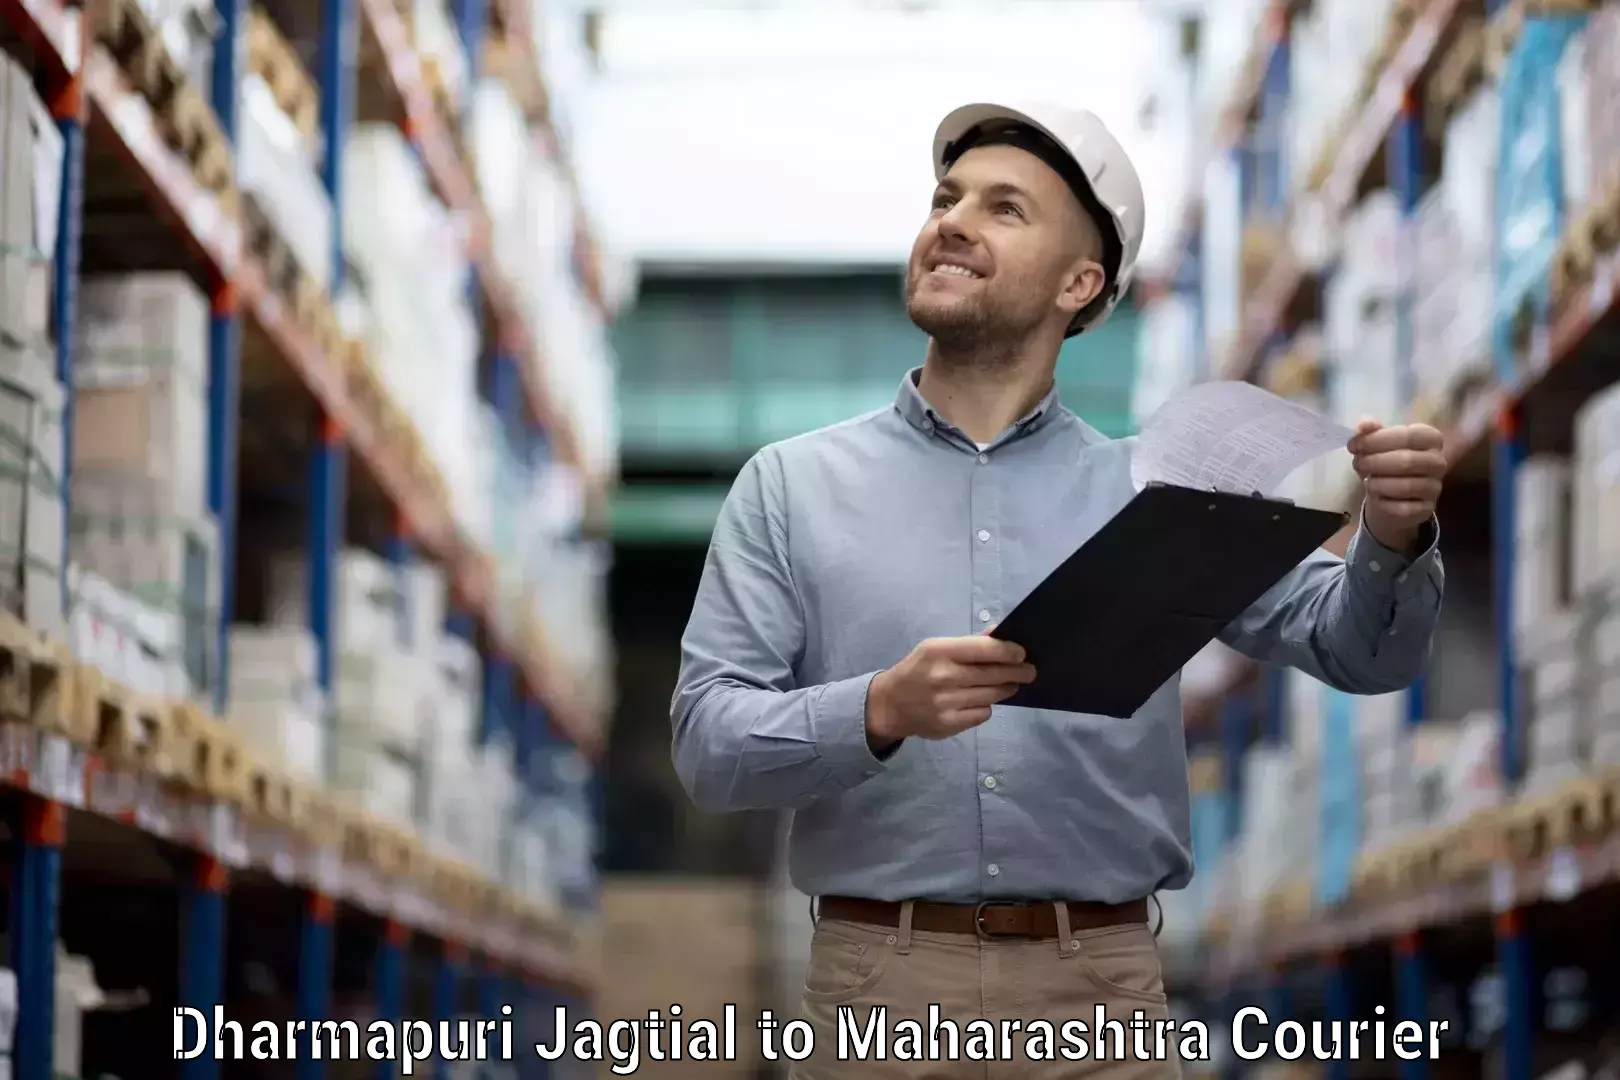 Business delivery service Dharmapuri Jagtial to Aheri